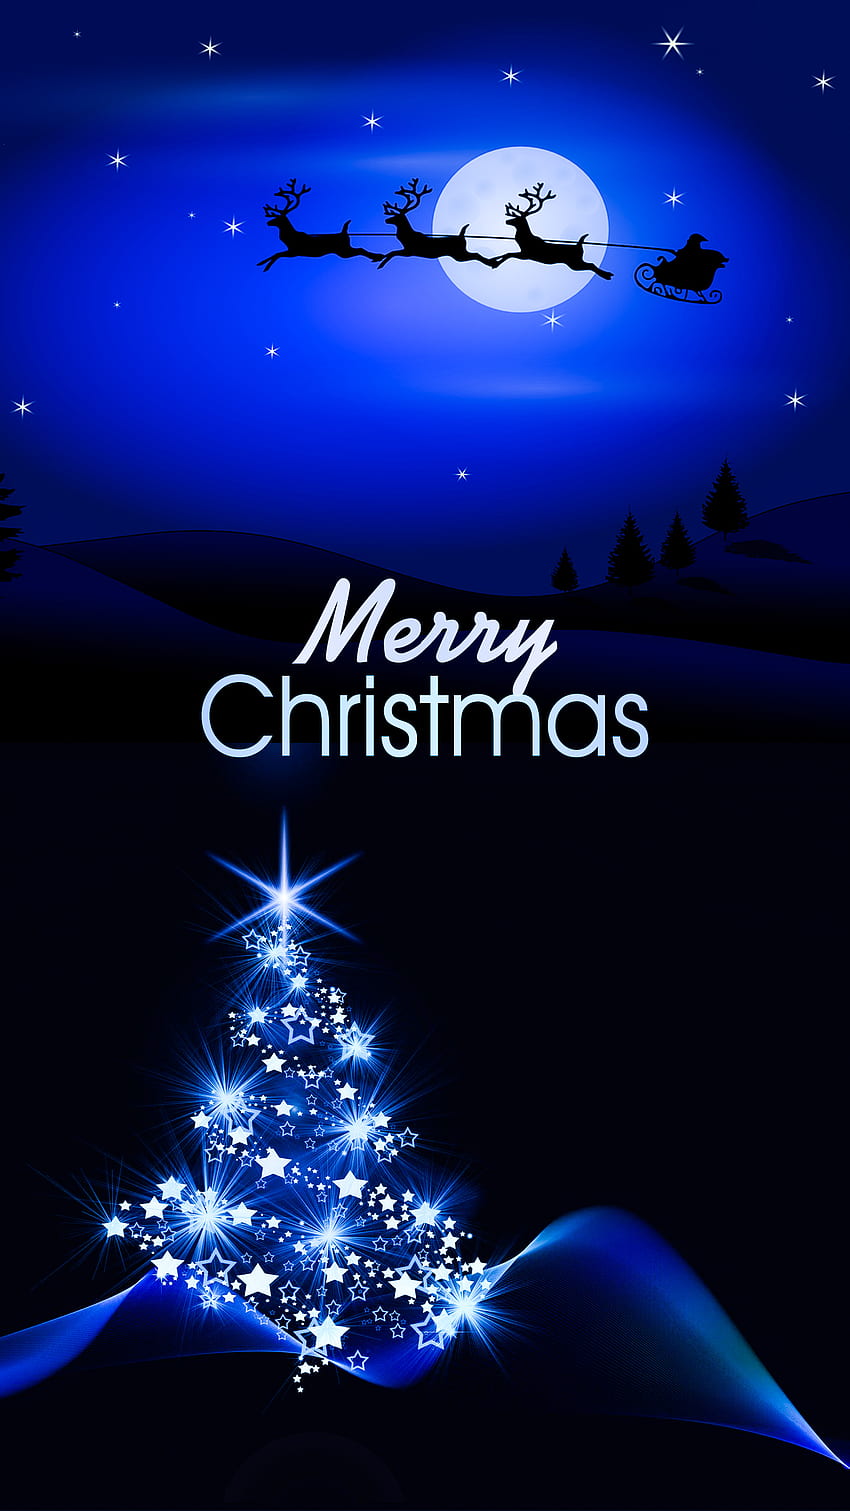 Chào đón mùa giáng sinh với tinh thần vui tươi, ông già Noel và cây thông. Hãy cùng chúng tôi tận hưởng không khí Noel đầy ma ắp trong từng hình ảnh. Đêm nay, hãy thư giãn, đắm chìm vào những bức ảnh đẹp và cảm nhận sự ấm áp của Giáng sinh nhé!